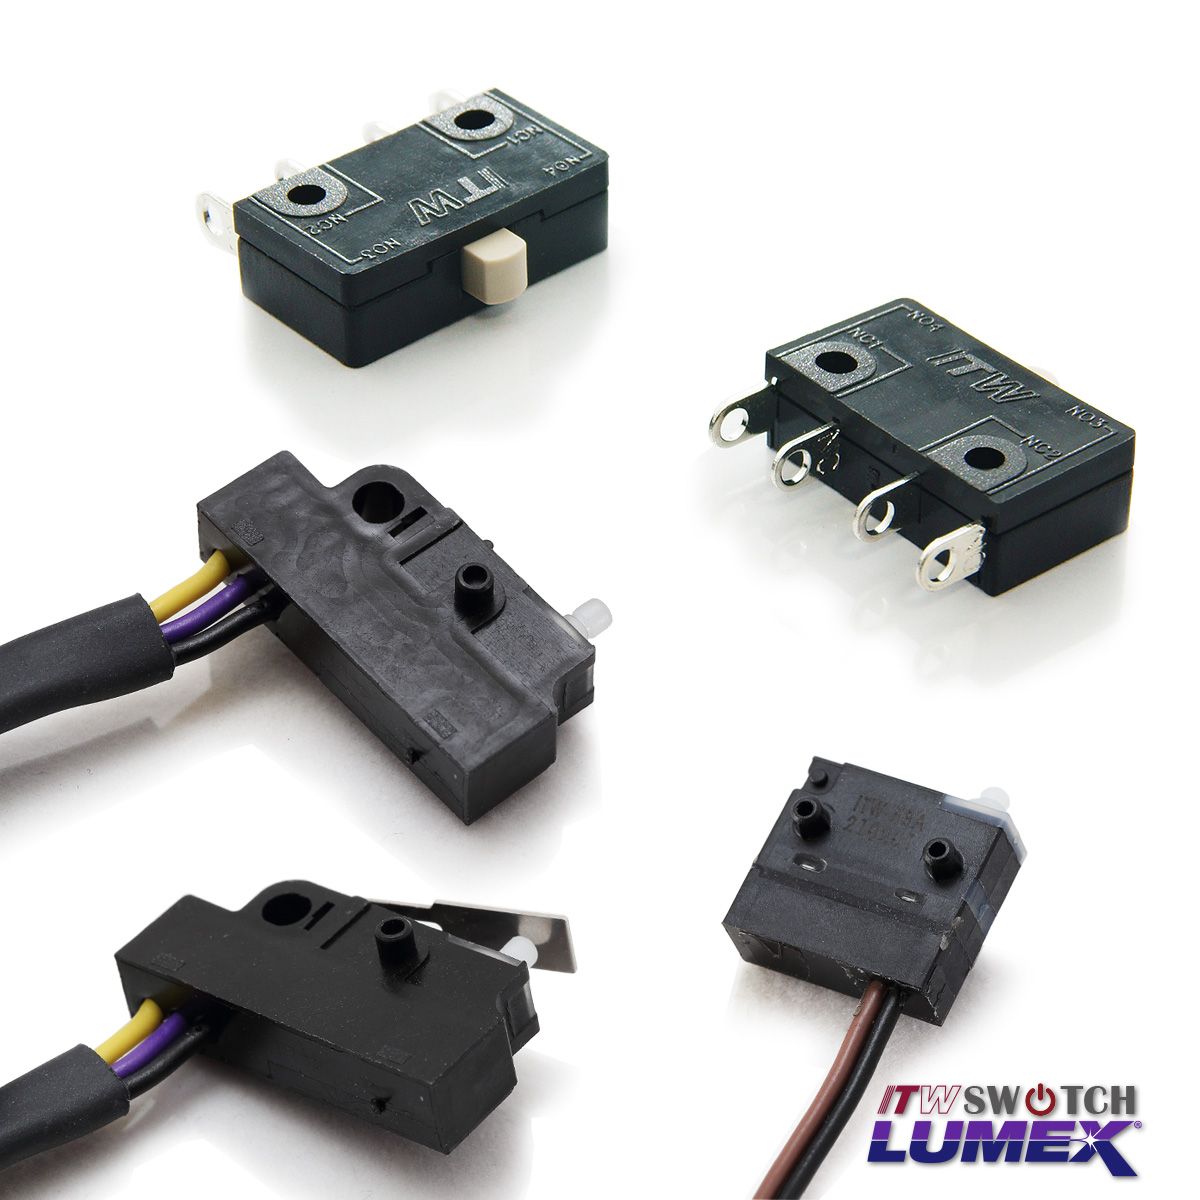 ITW Lumex Switchfurnizează Micro Switch-uri ca parte a ofertelor sale de produse.